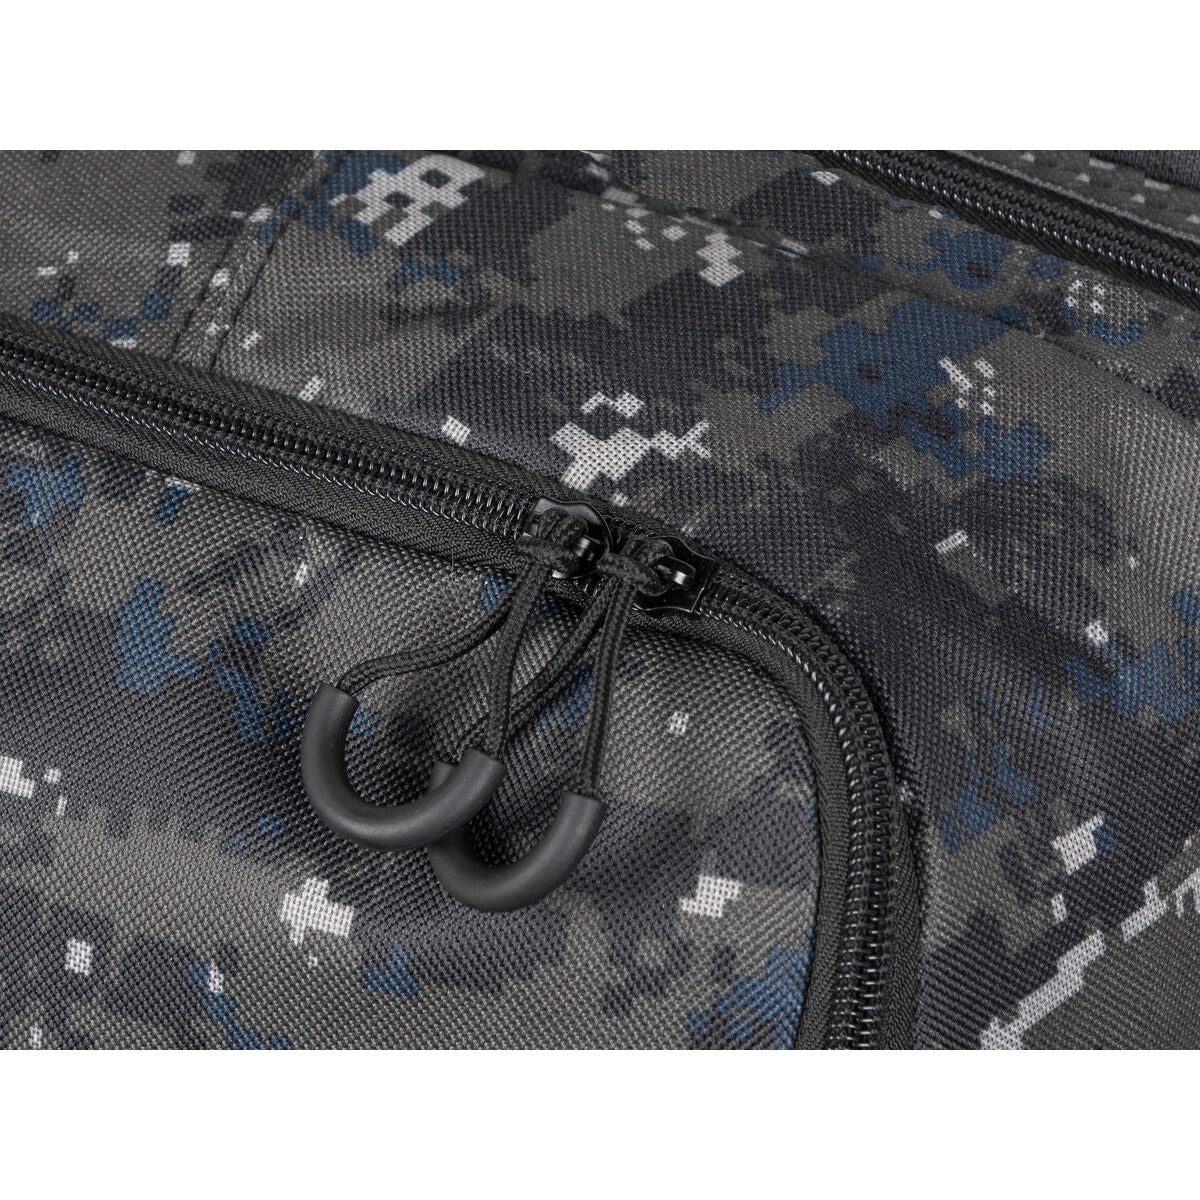 Laptop Backpack Genesis Pallad 450 Lite Camouflage 15,6"